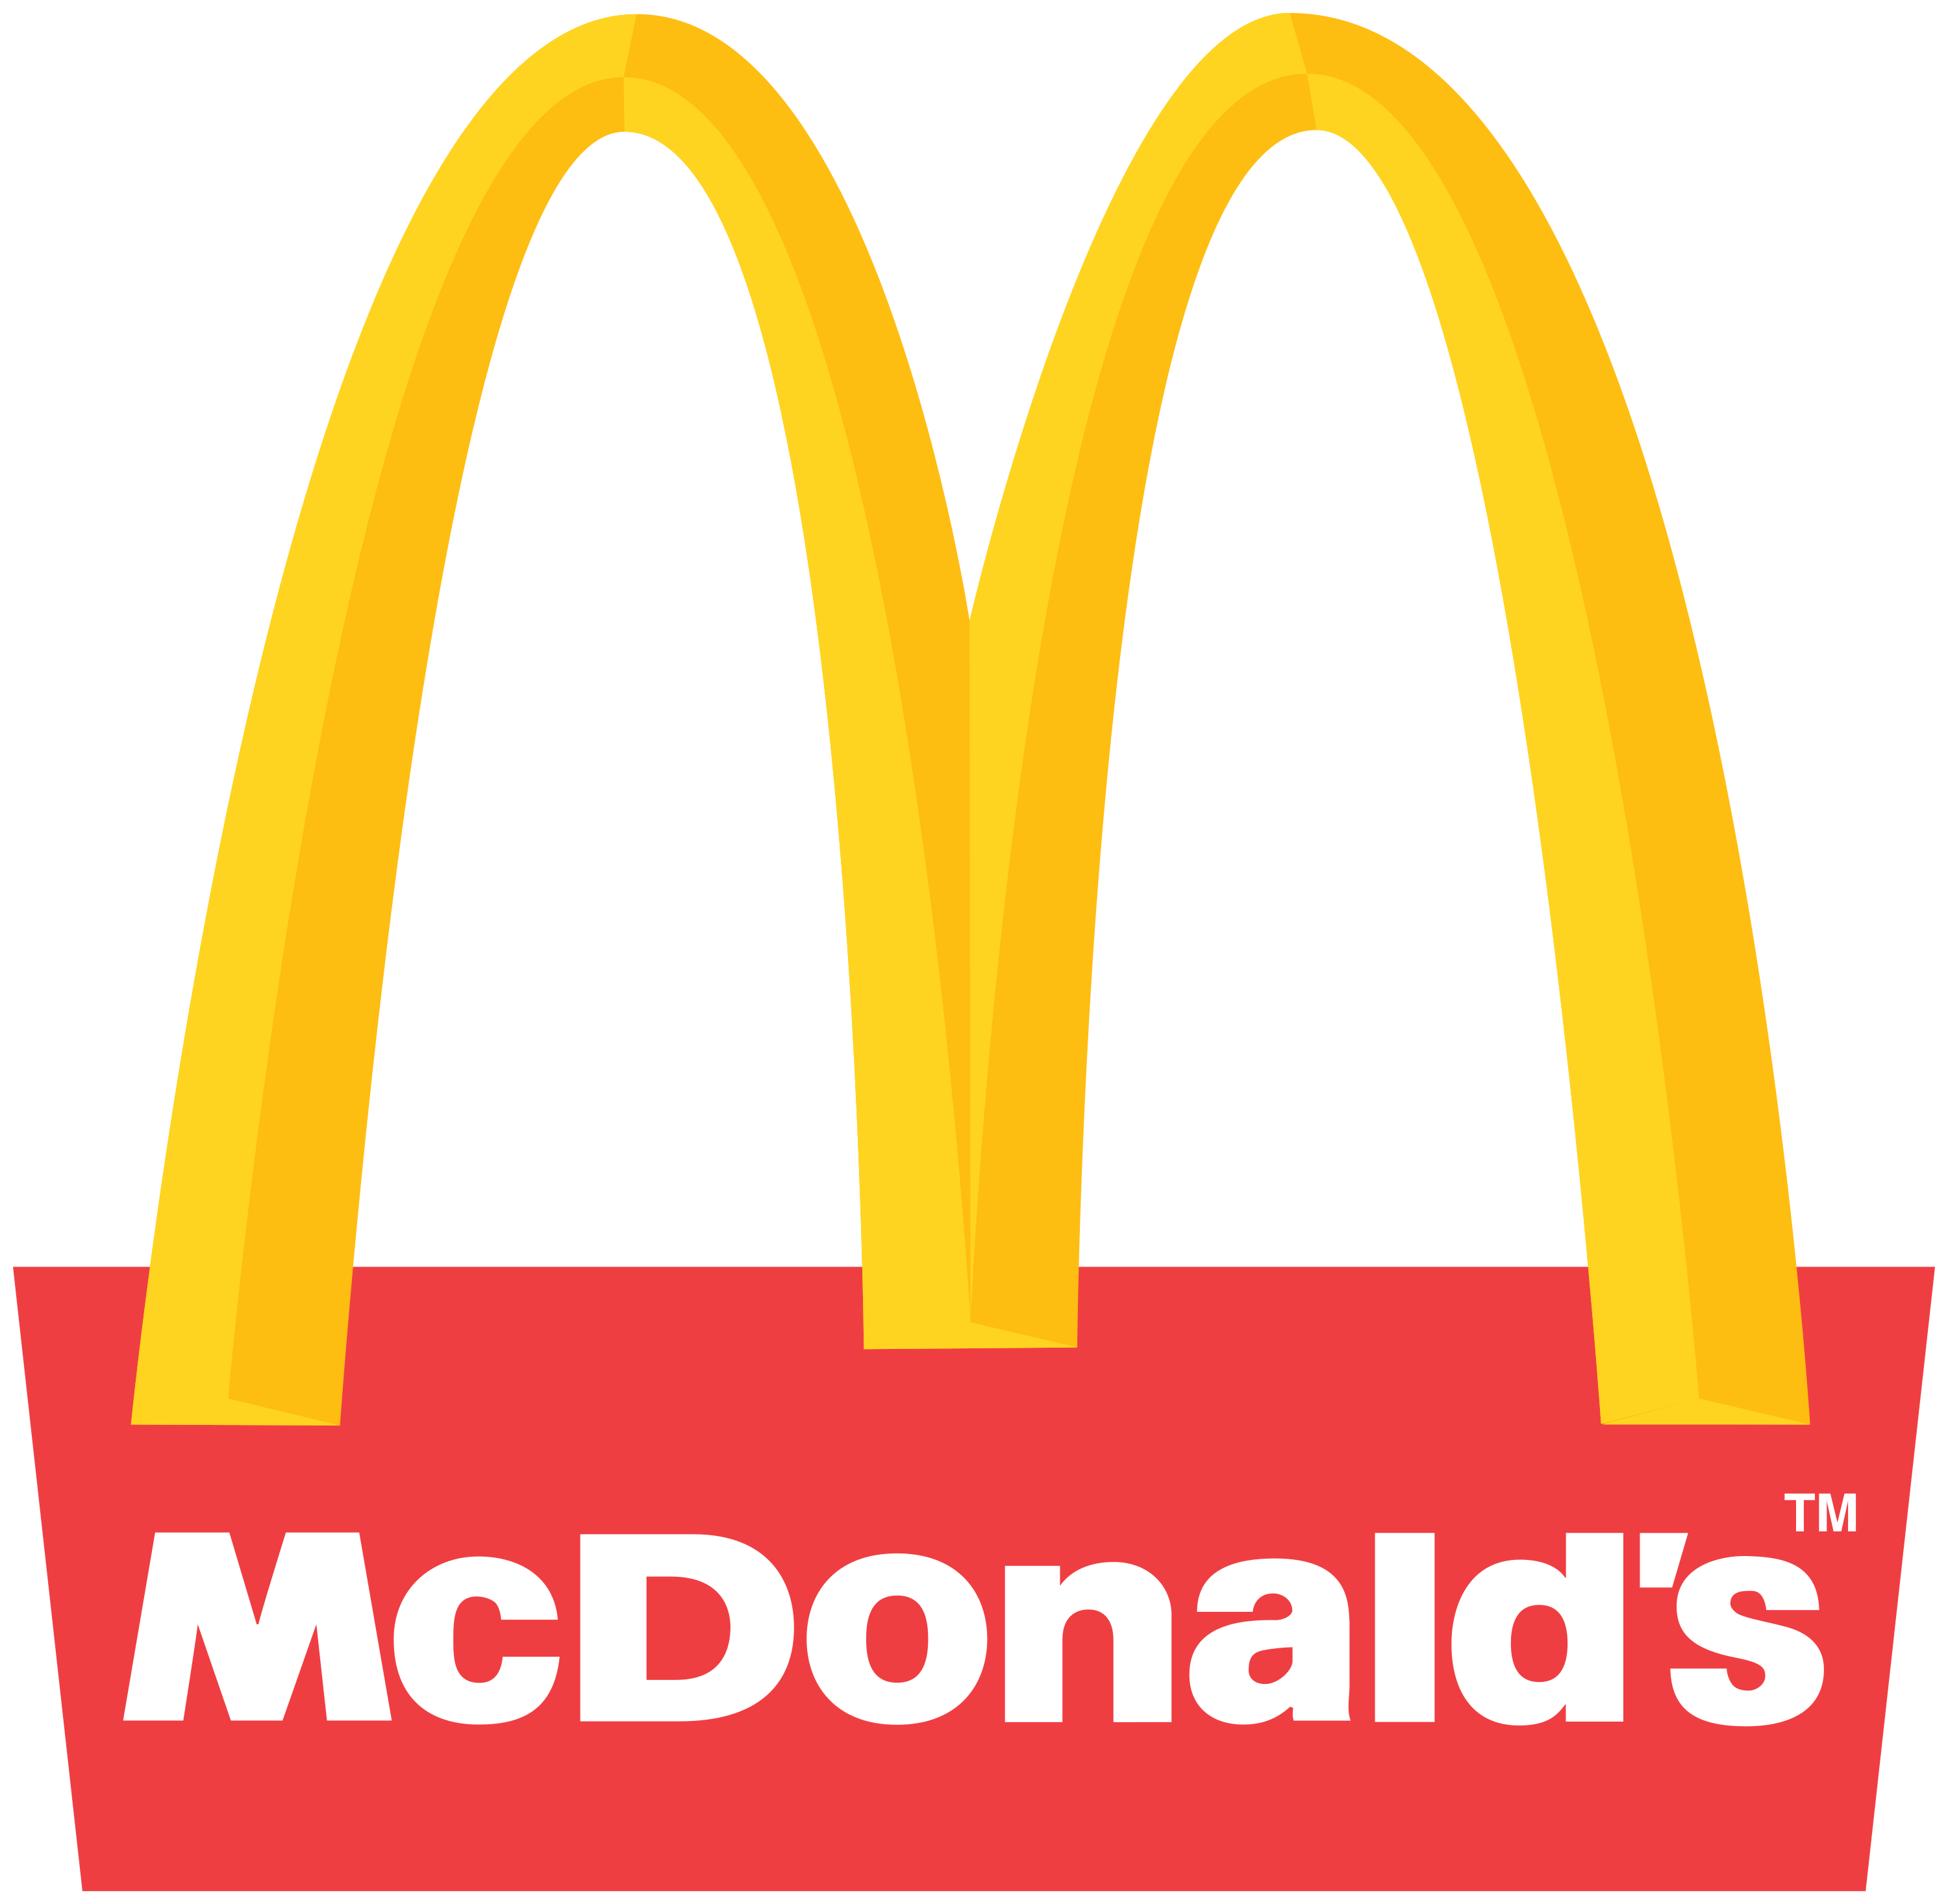 McDonald's Franchise Business 